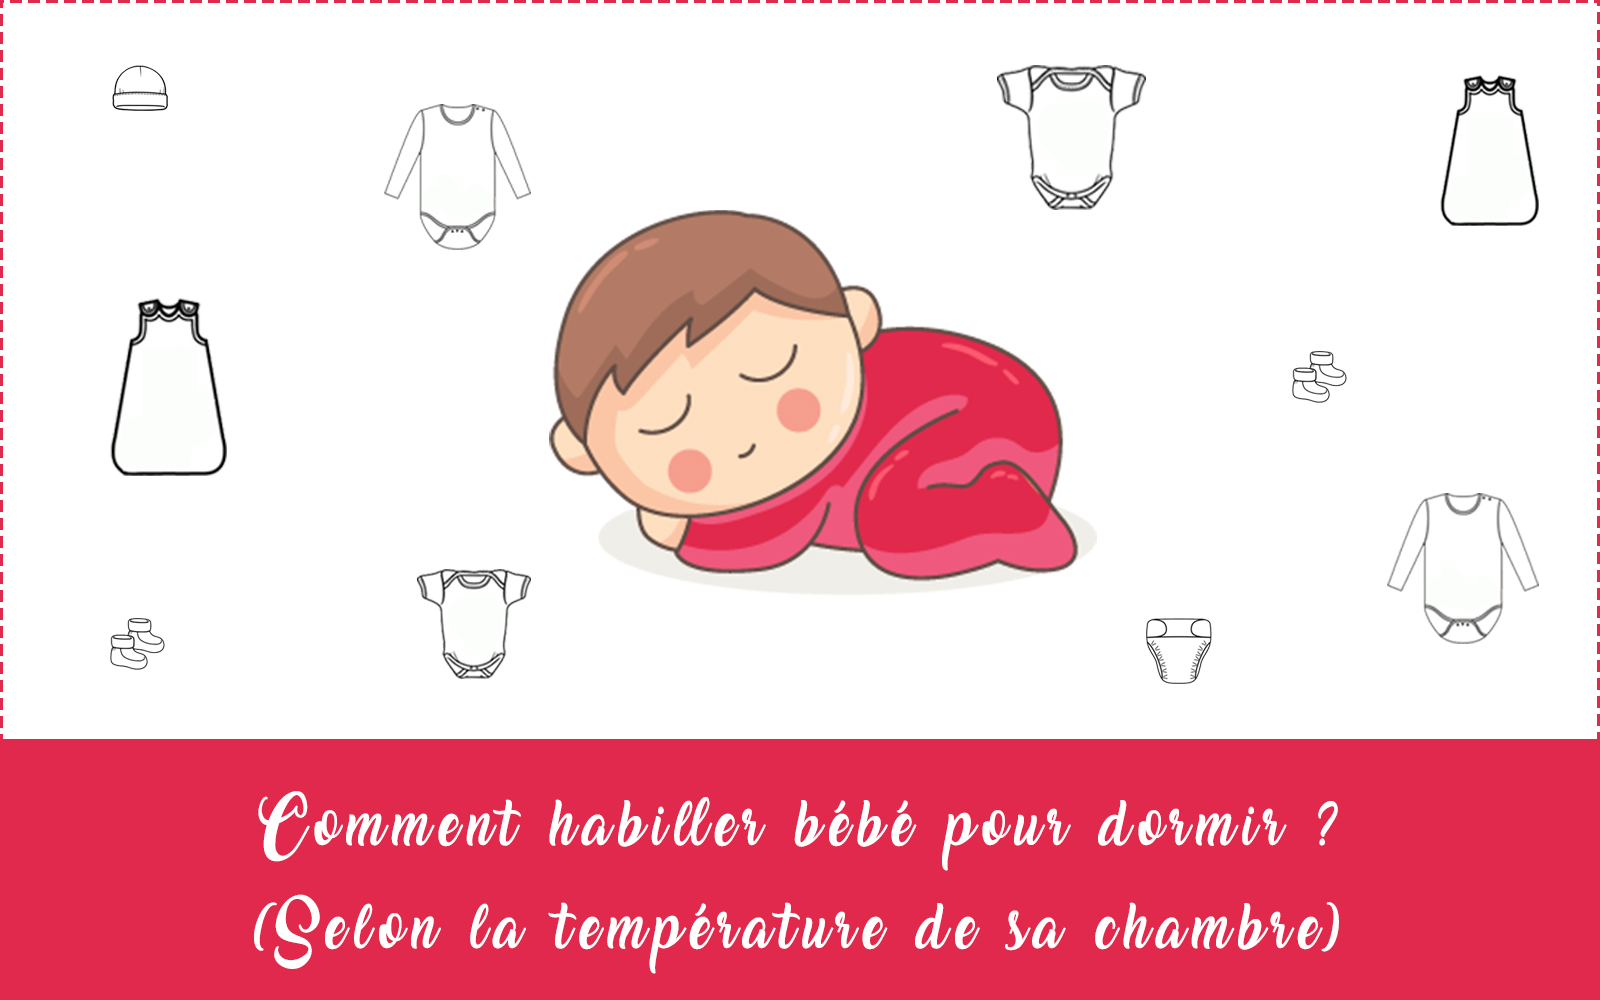 Comment habiller bébé la nuit, selon la température de sa chambre ?  (Schéma) • Cooking for my baby